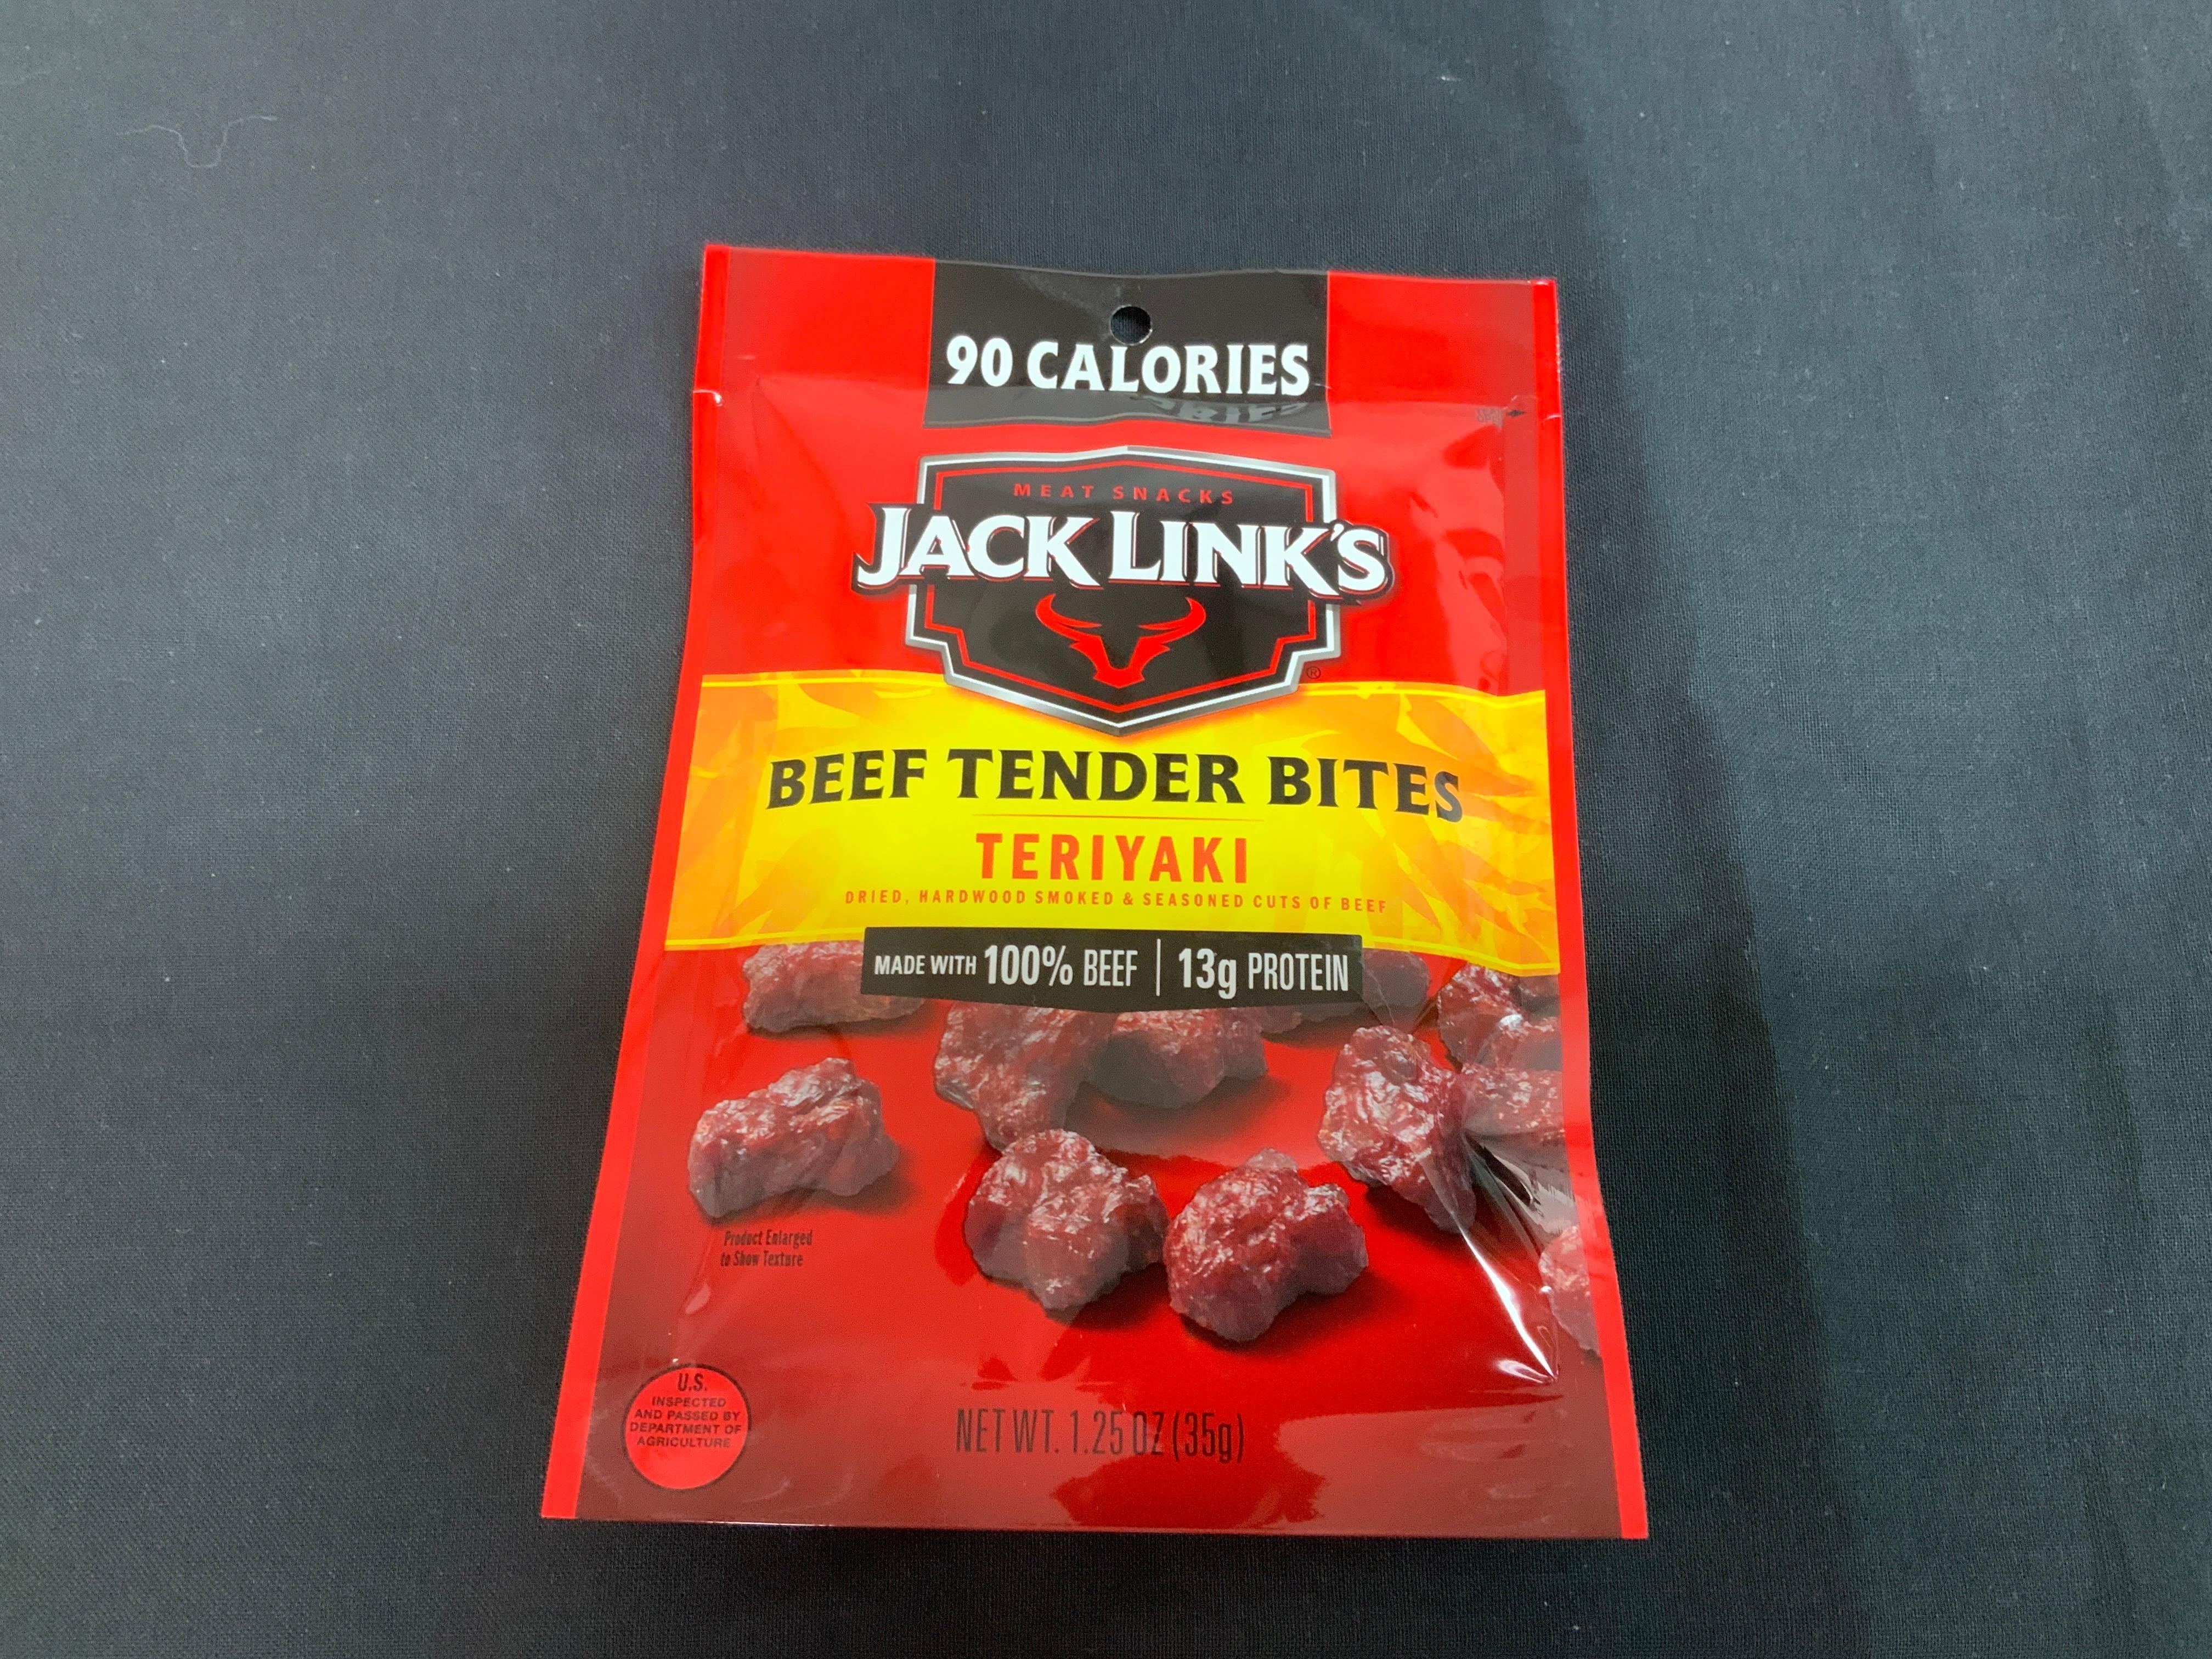 Jack Link’s Beef Tender Bites Teriyaki